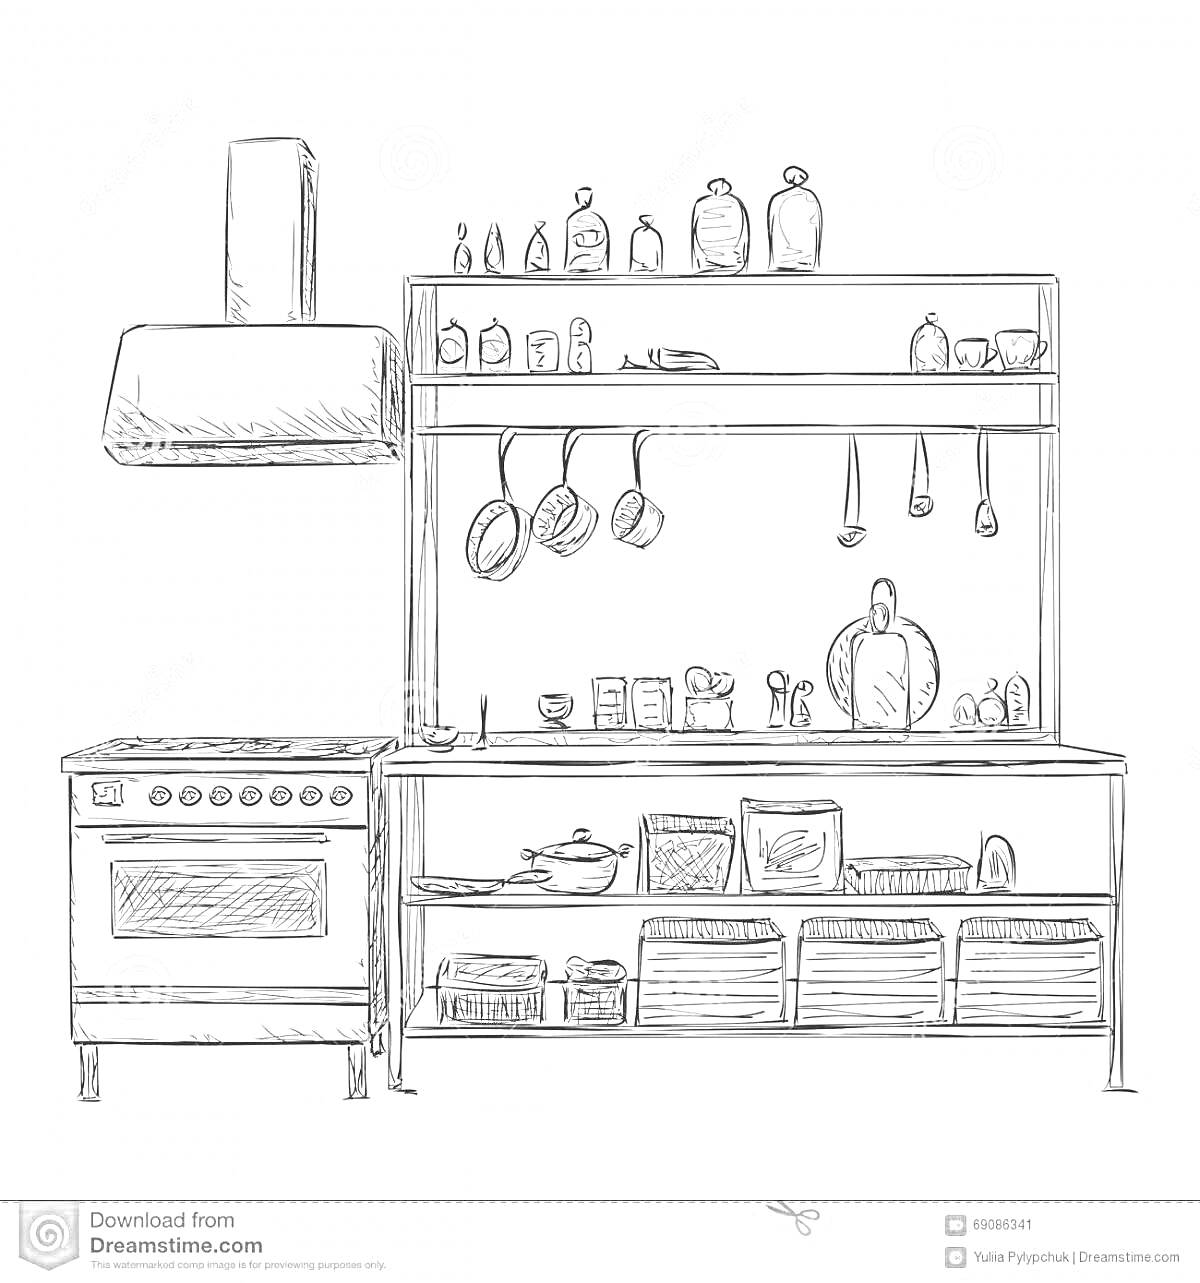 На раскраске изображено: Кухонный шкаф, Посуда, Кастрюли, Вентиляция, Полки, Кухонная утварь